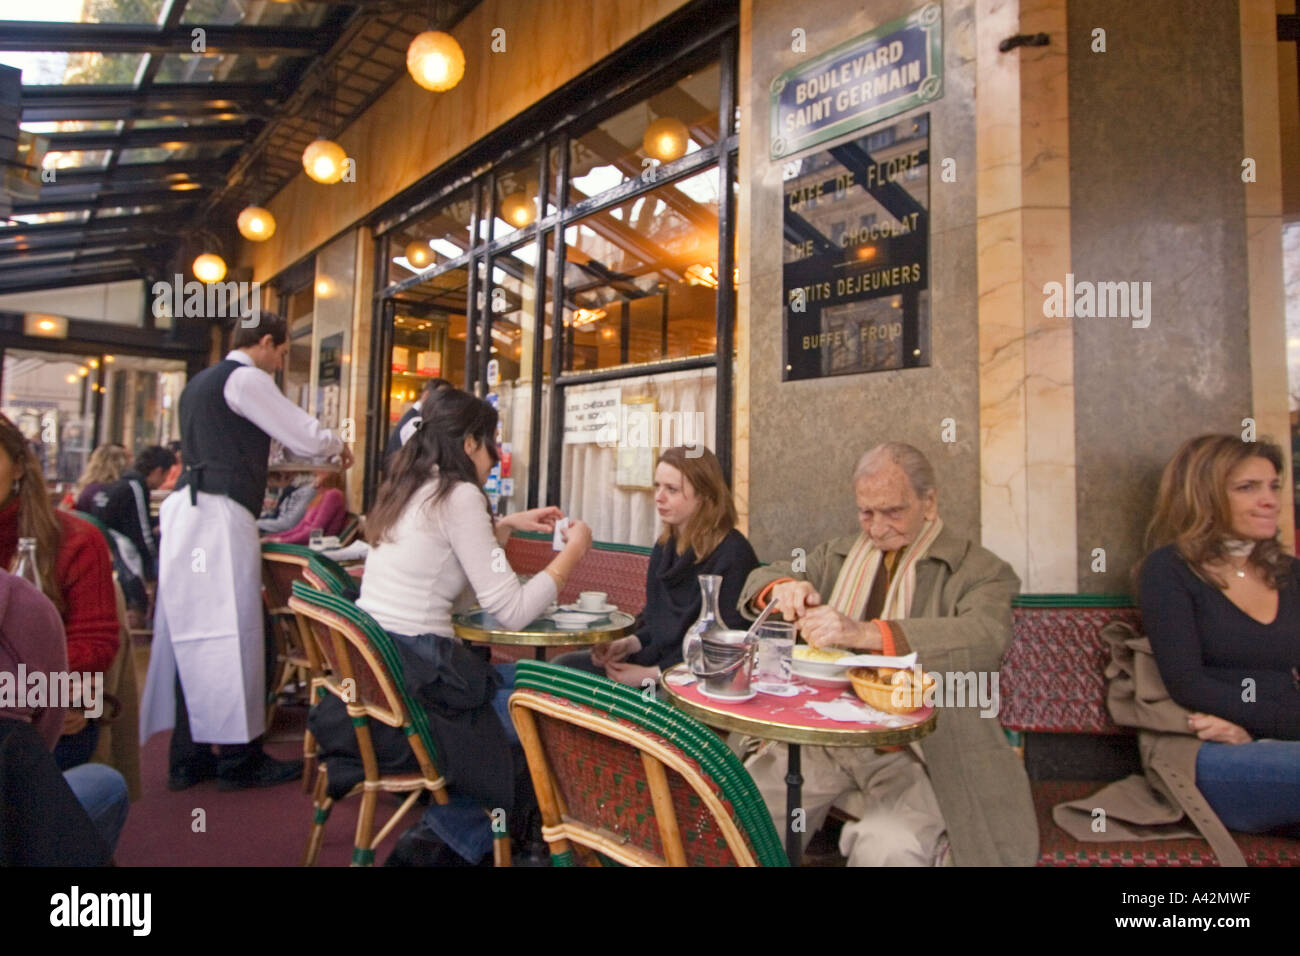 Paris St German Cafe de Flore Stock Photo